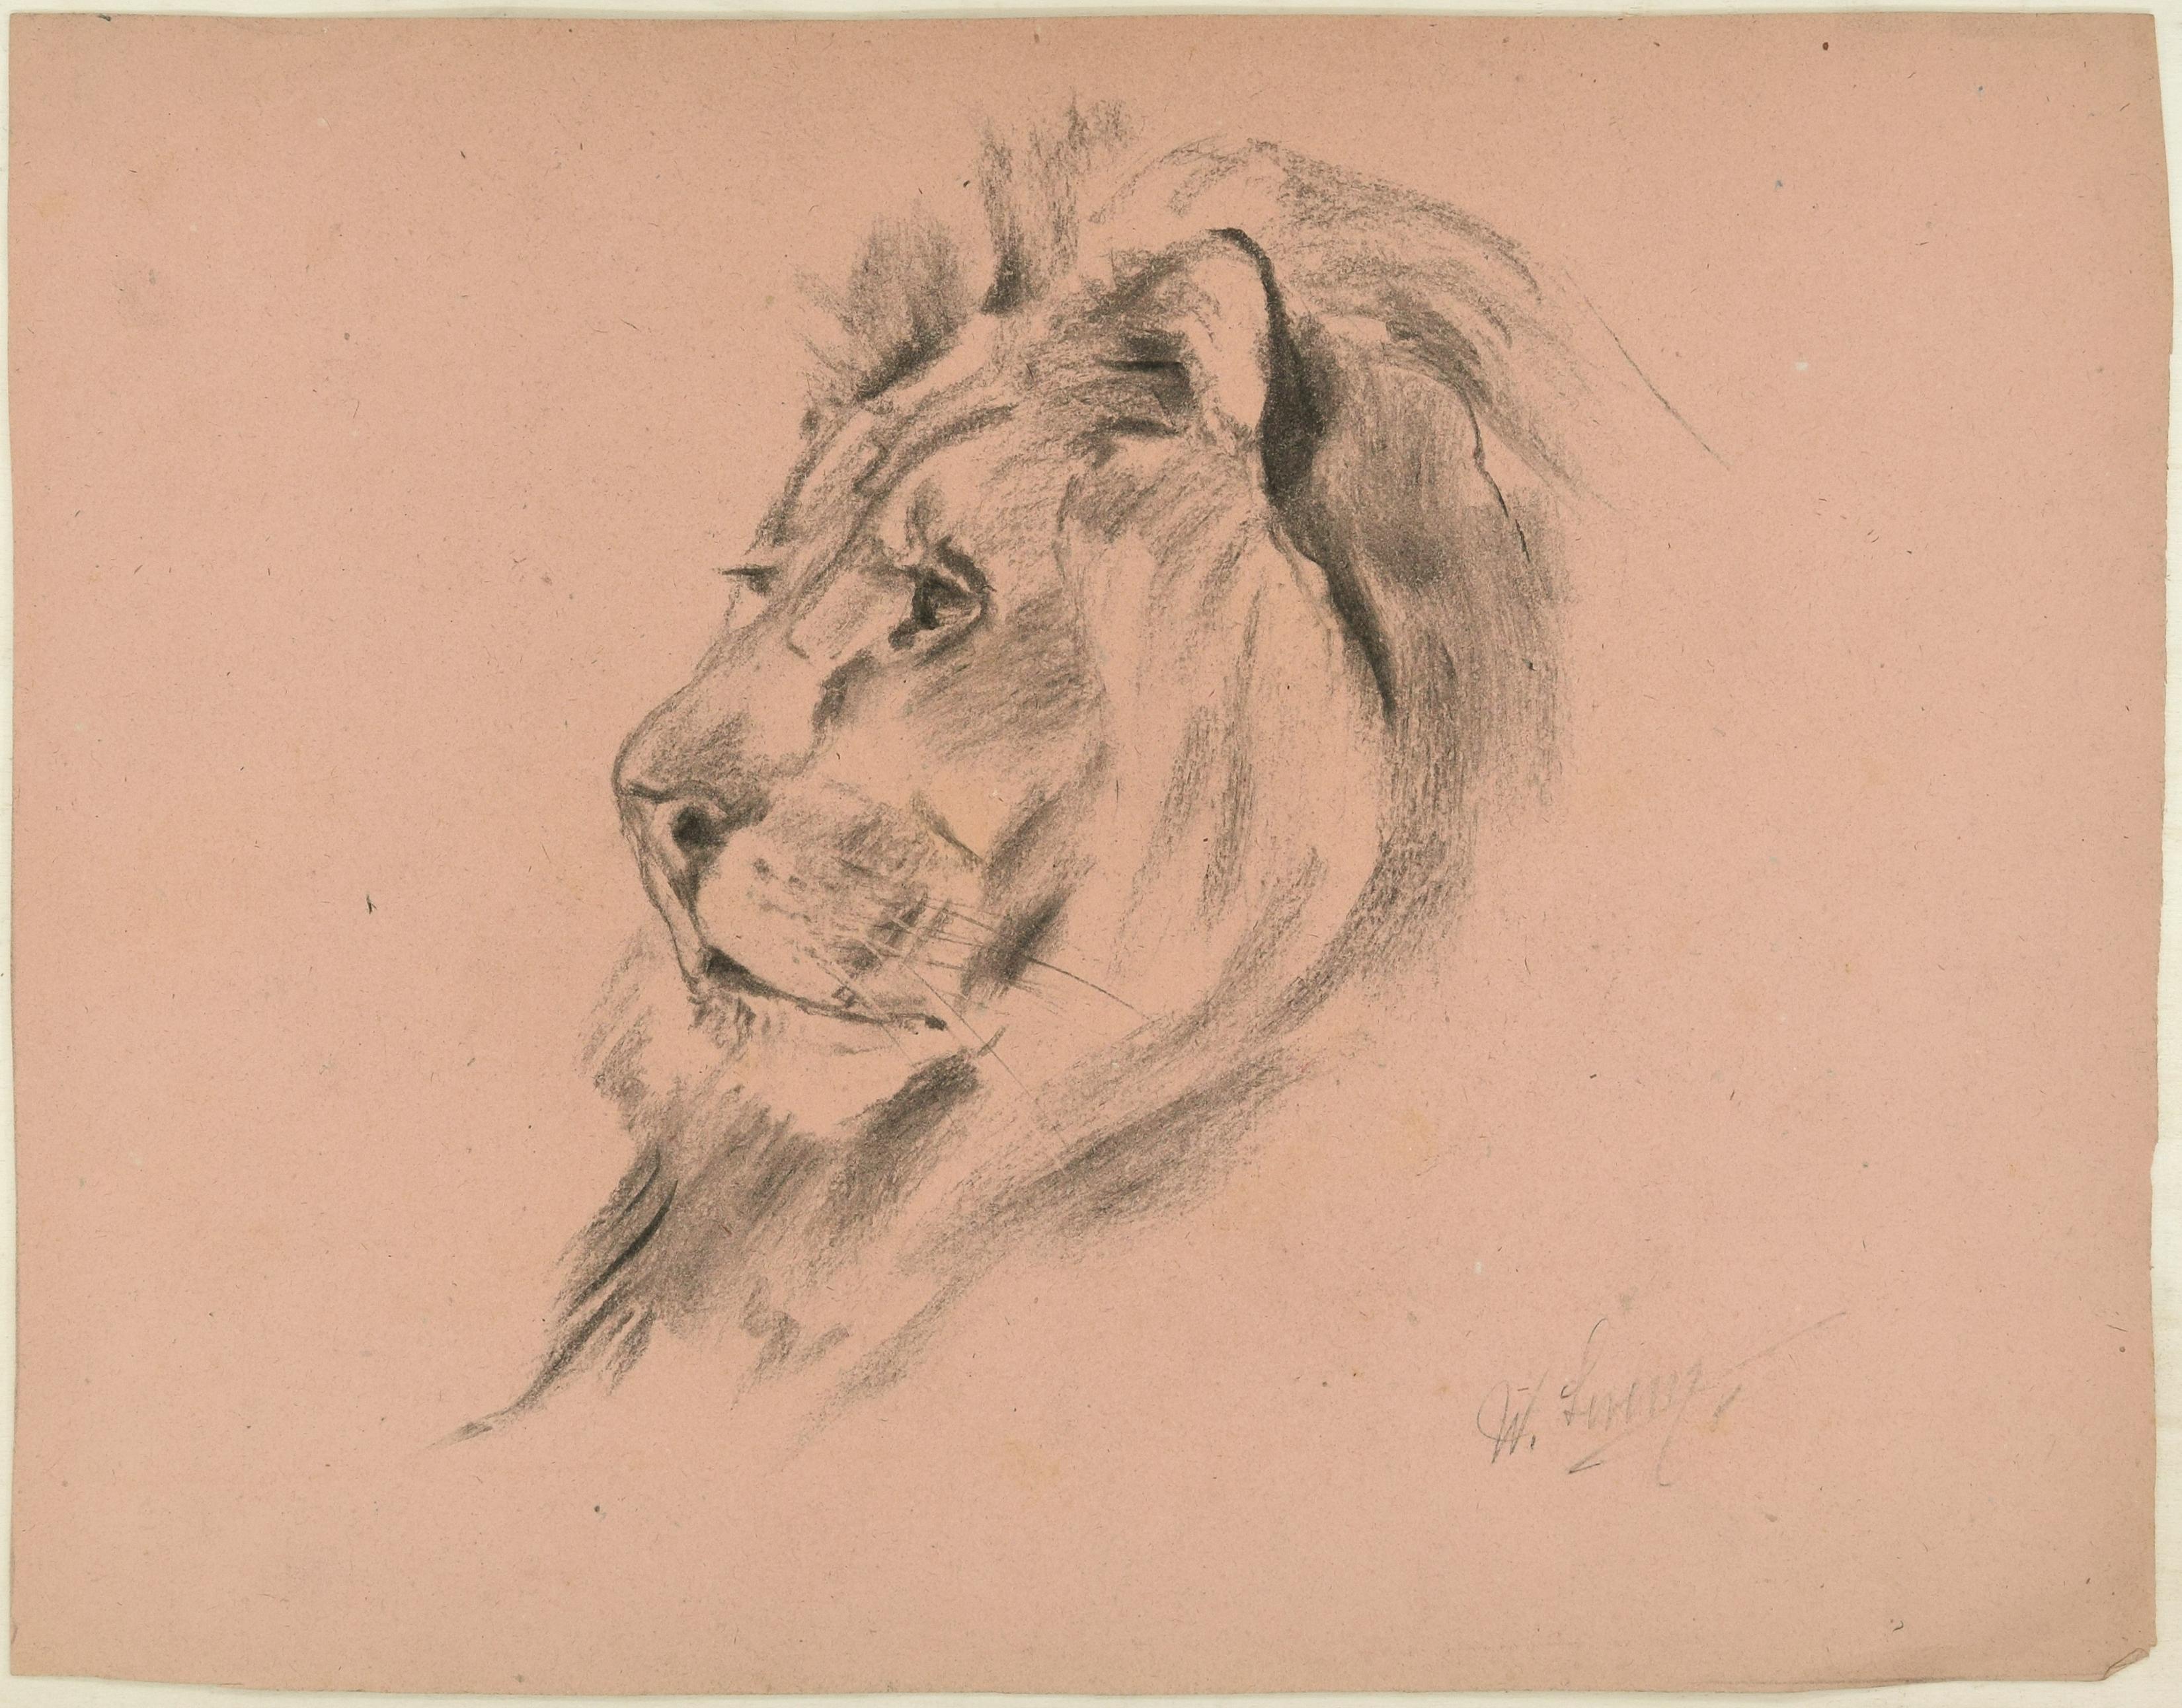 Le profil d'un lion - dessin original au fusain de Willy Lorenz - années 1940